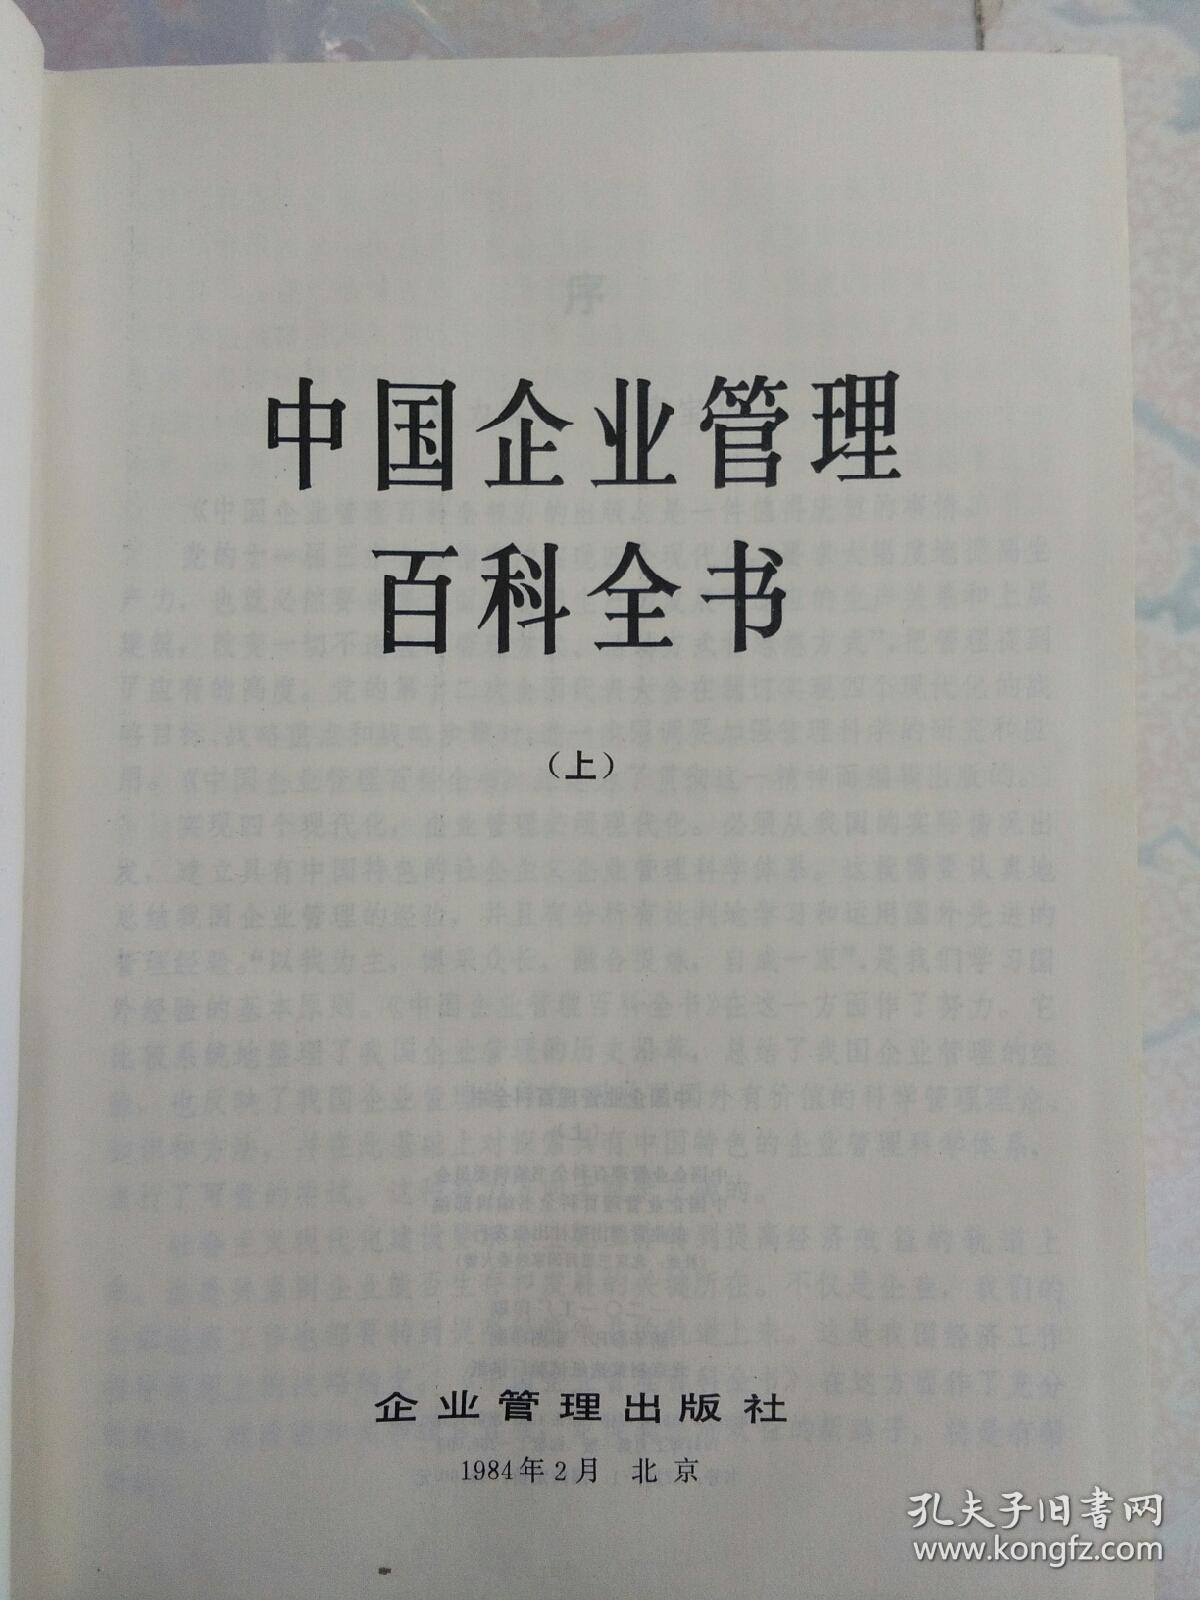 中国企业管理百科全书(上、下册)